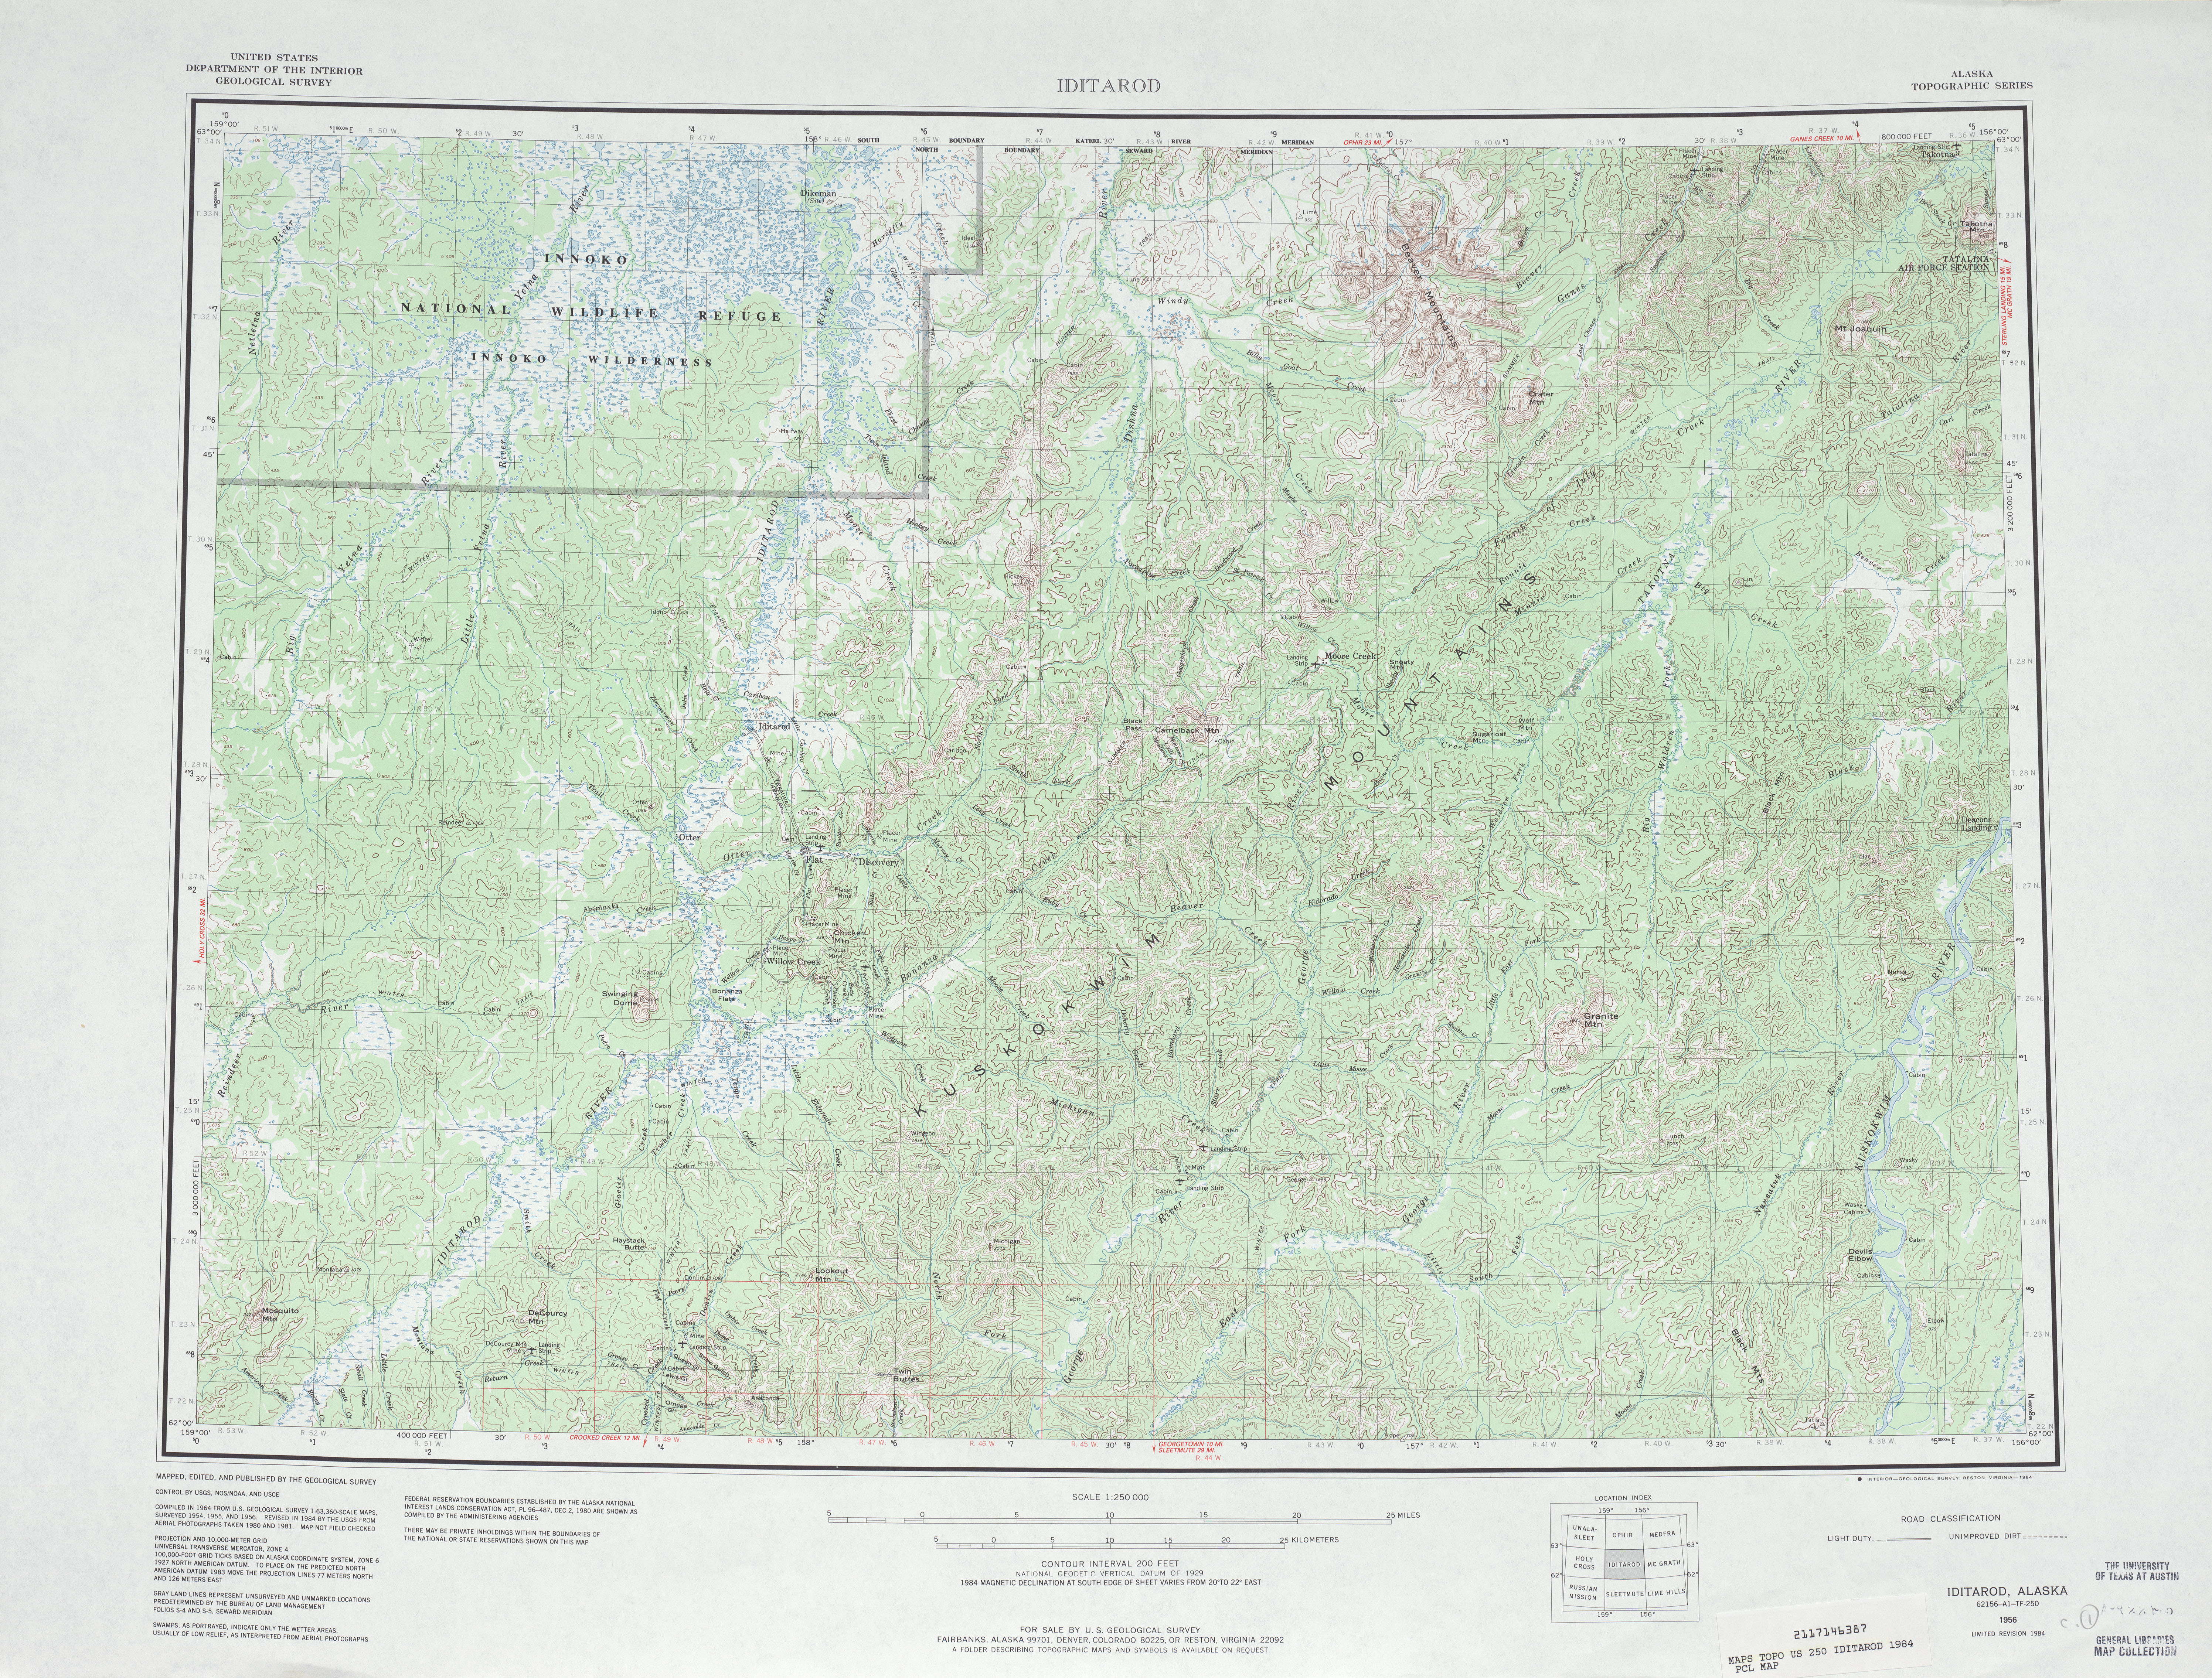 Hoja Iditarod del Mapa Topográfico de los Estados Unidos 1984